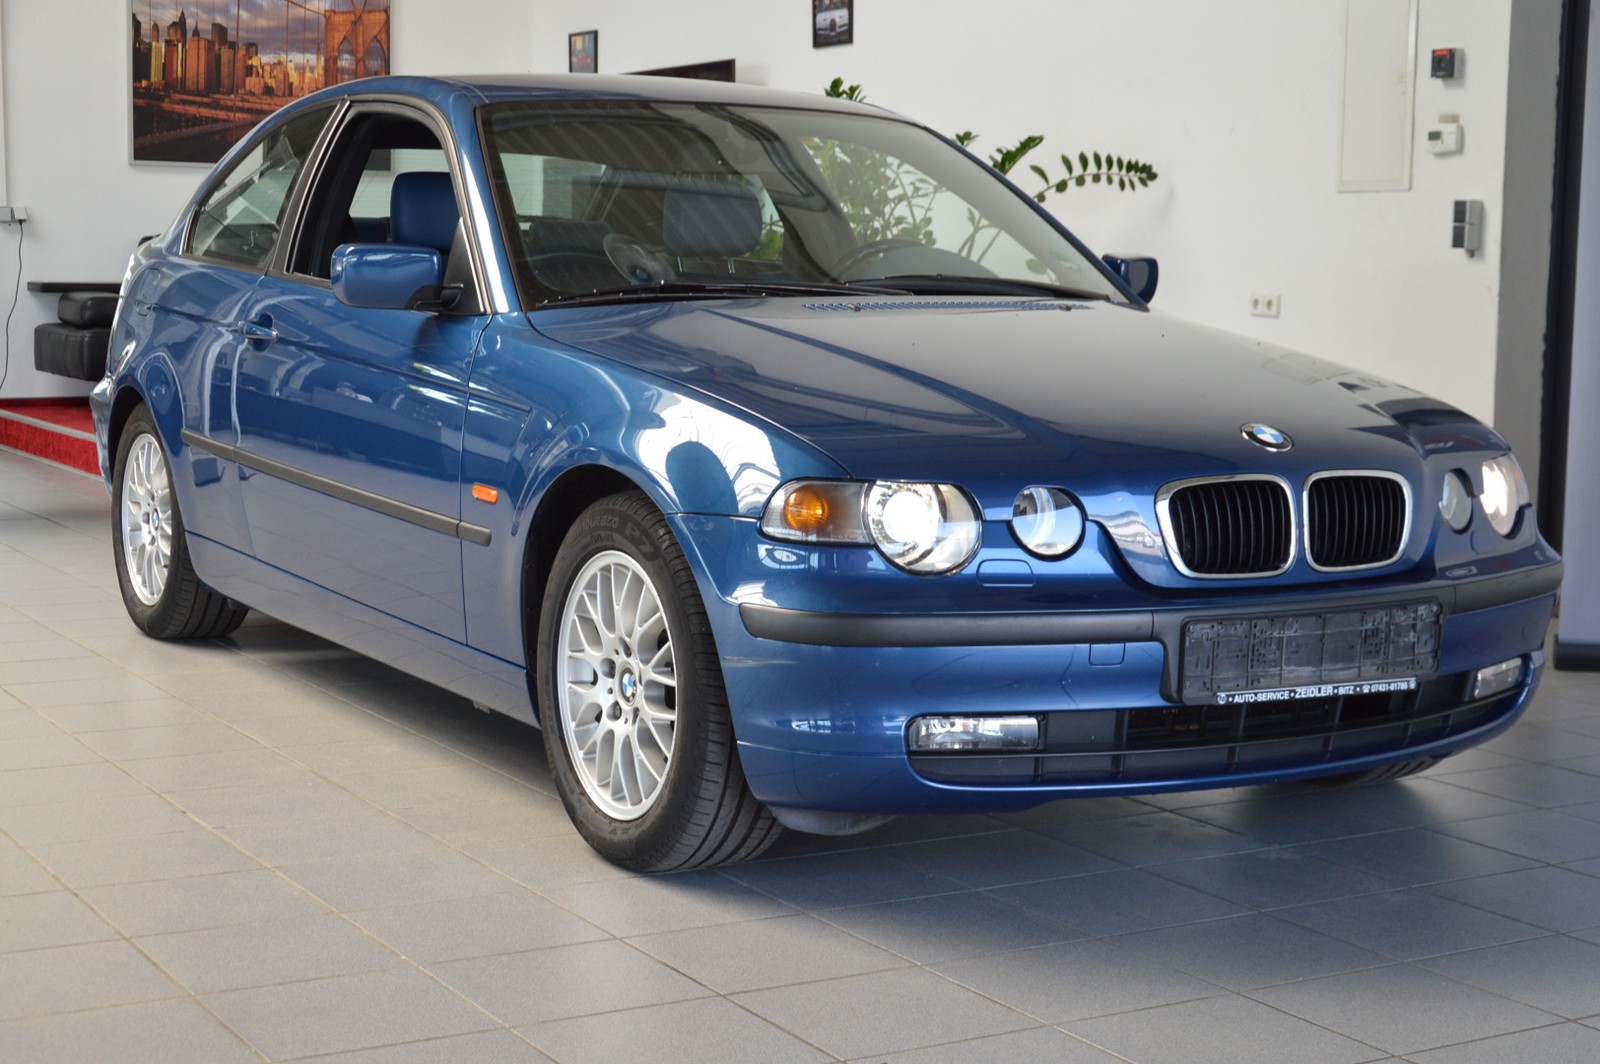 BMW 316 ti gebraucht kaufen in Balingen Preis 1490 eur - Int.Nr.: 1603  VERKAUFT